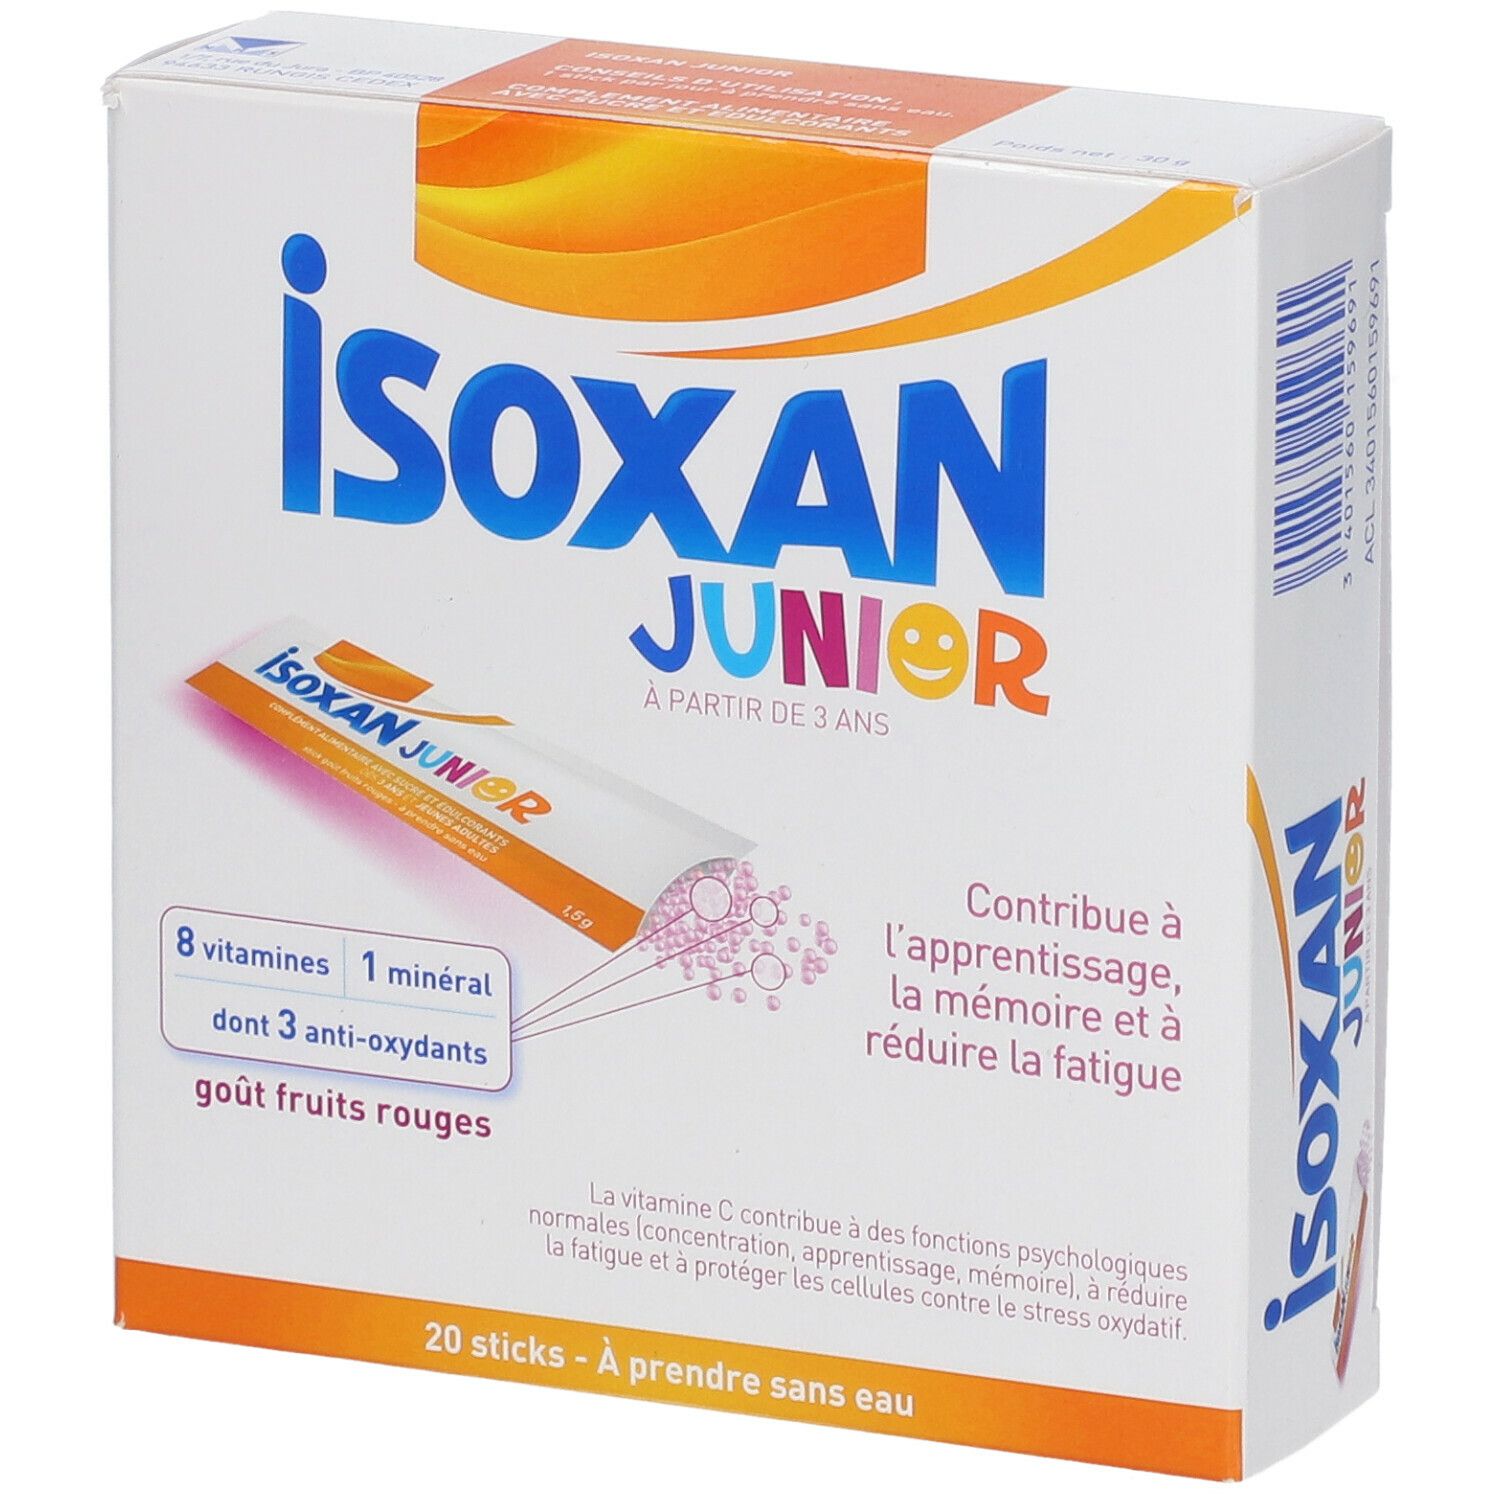 Isoxan® Junior